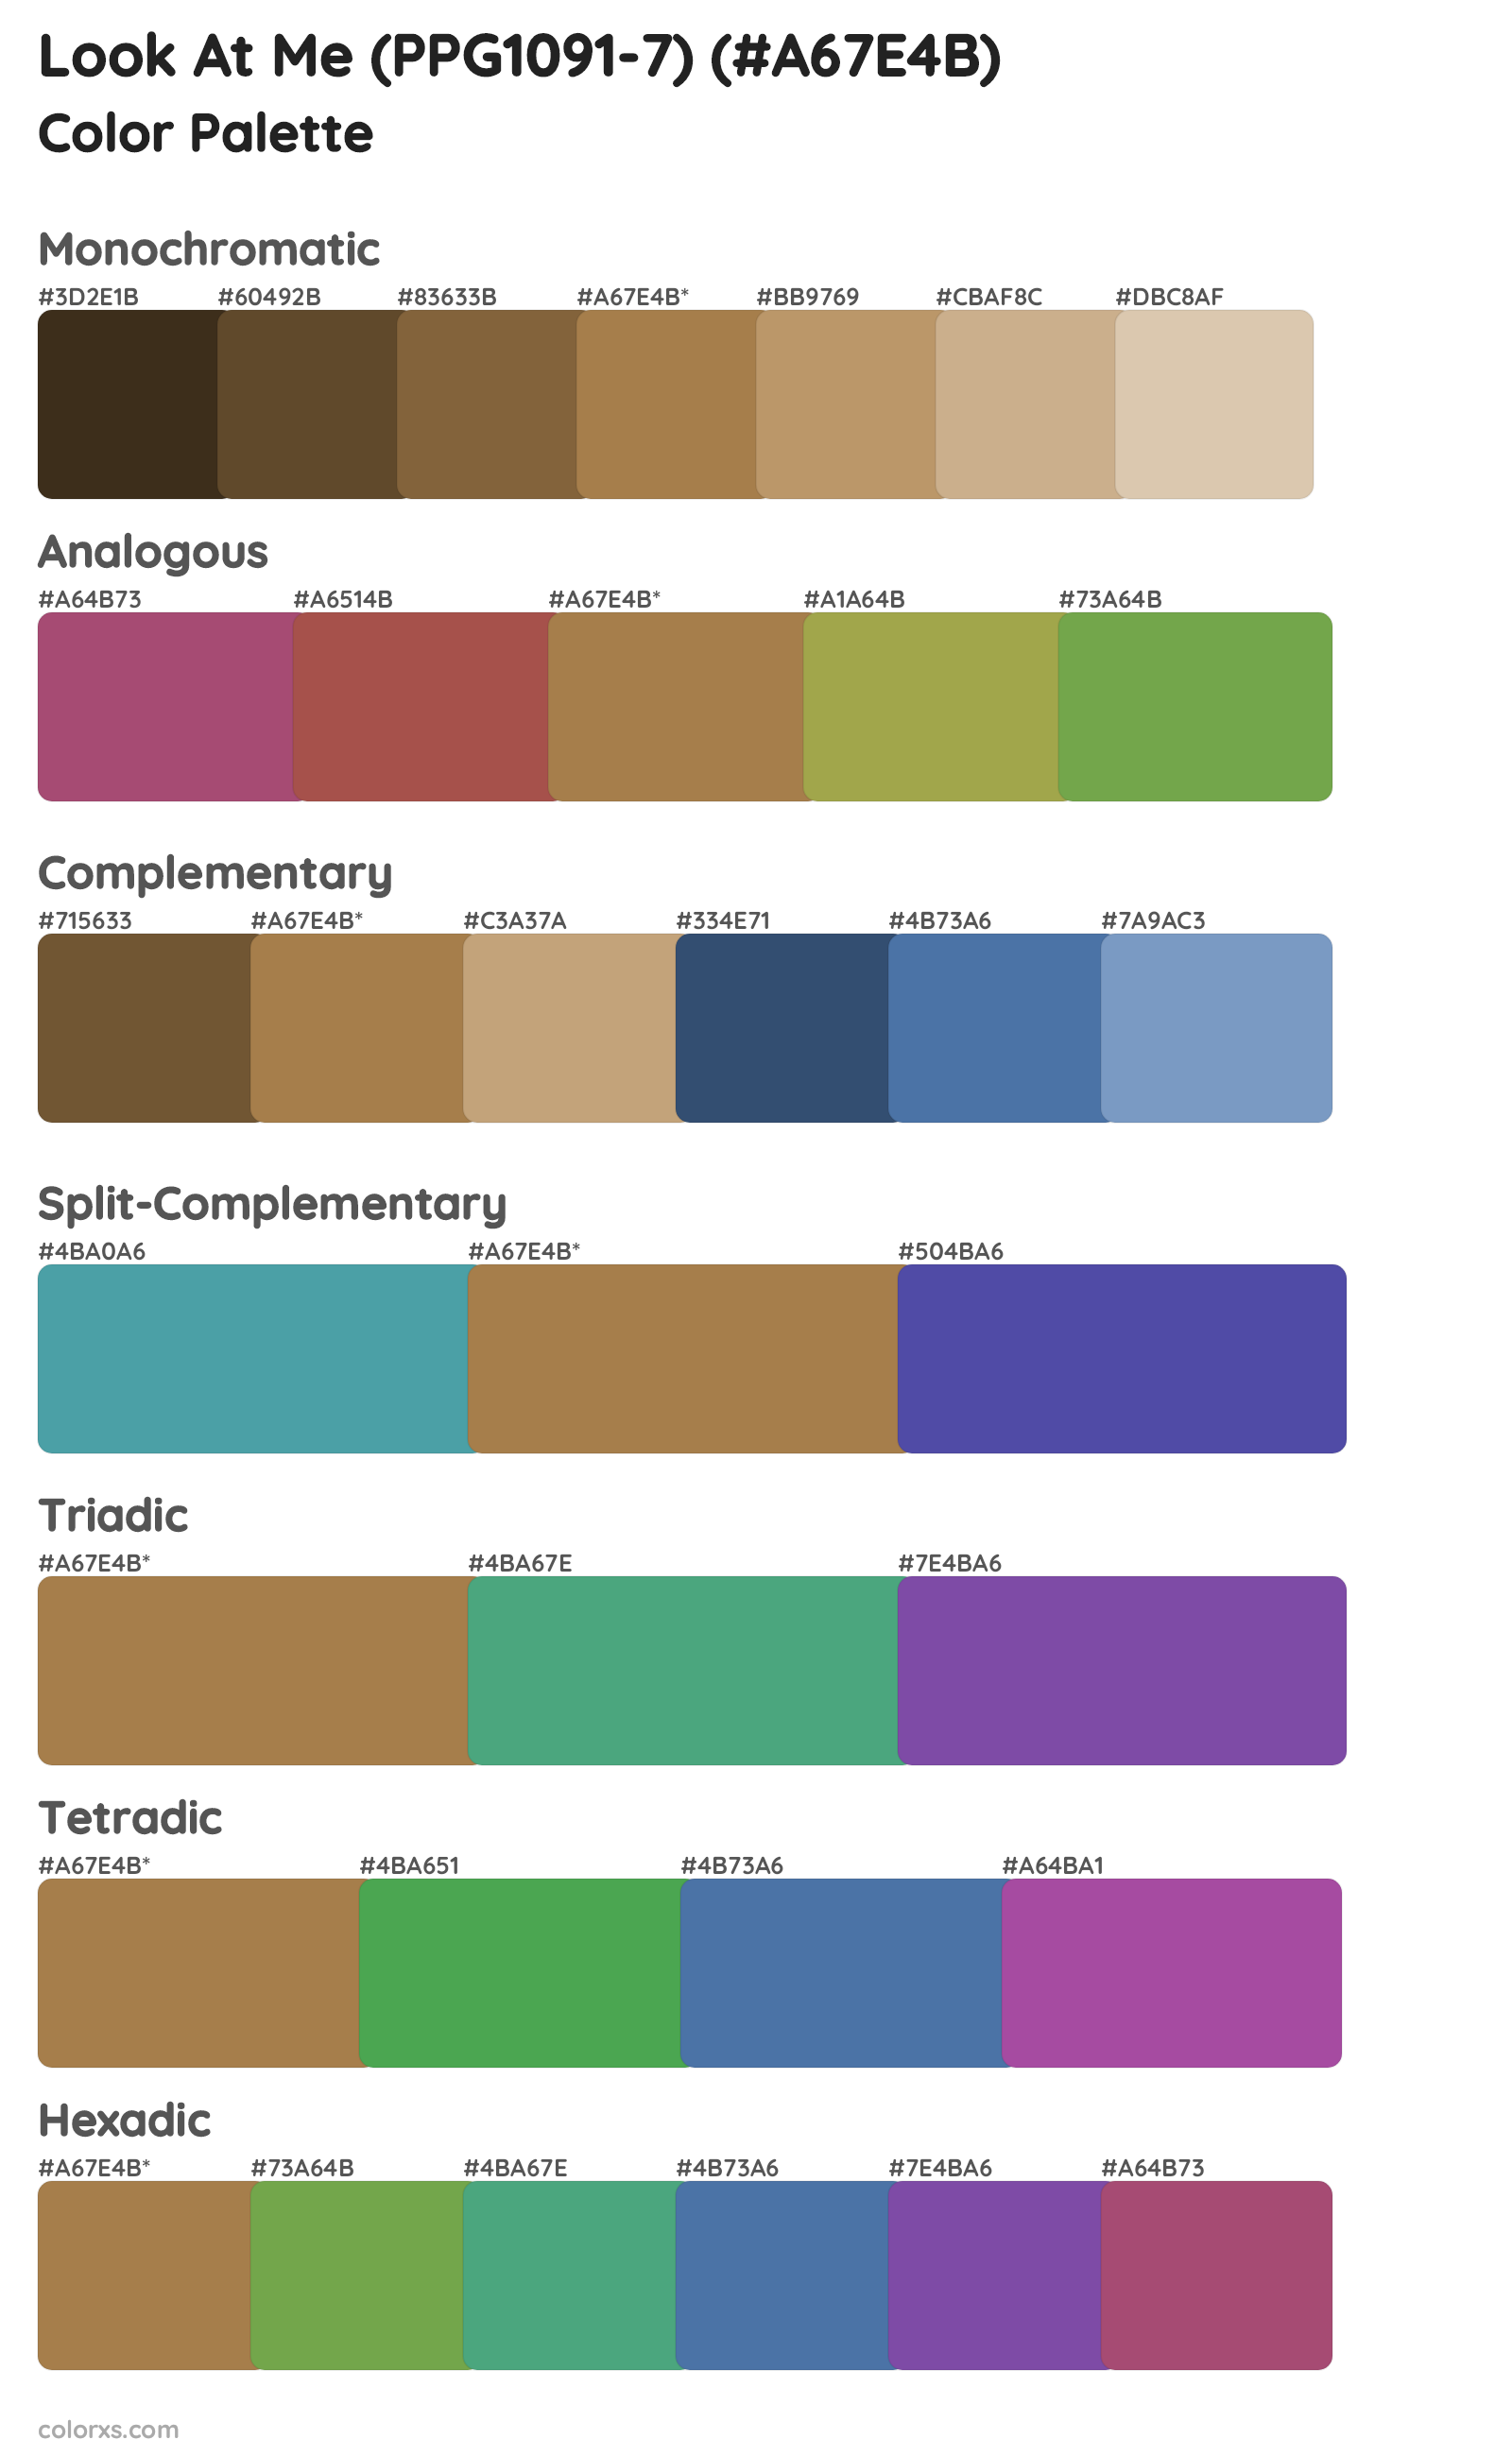 Look At Me (PPG1091-7) Color Scheme Palettes